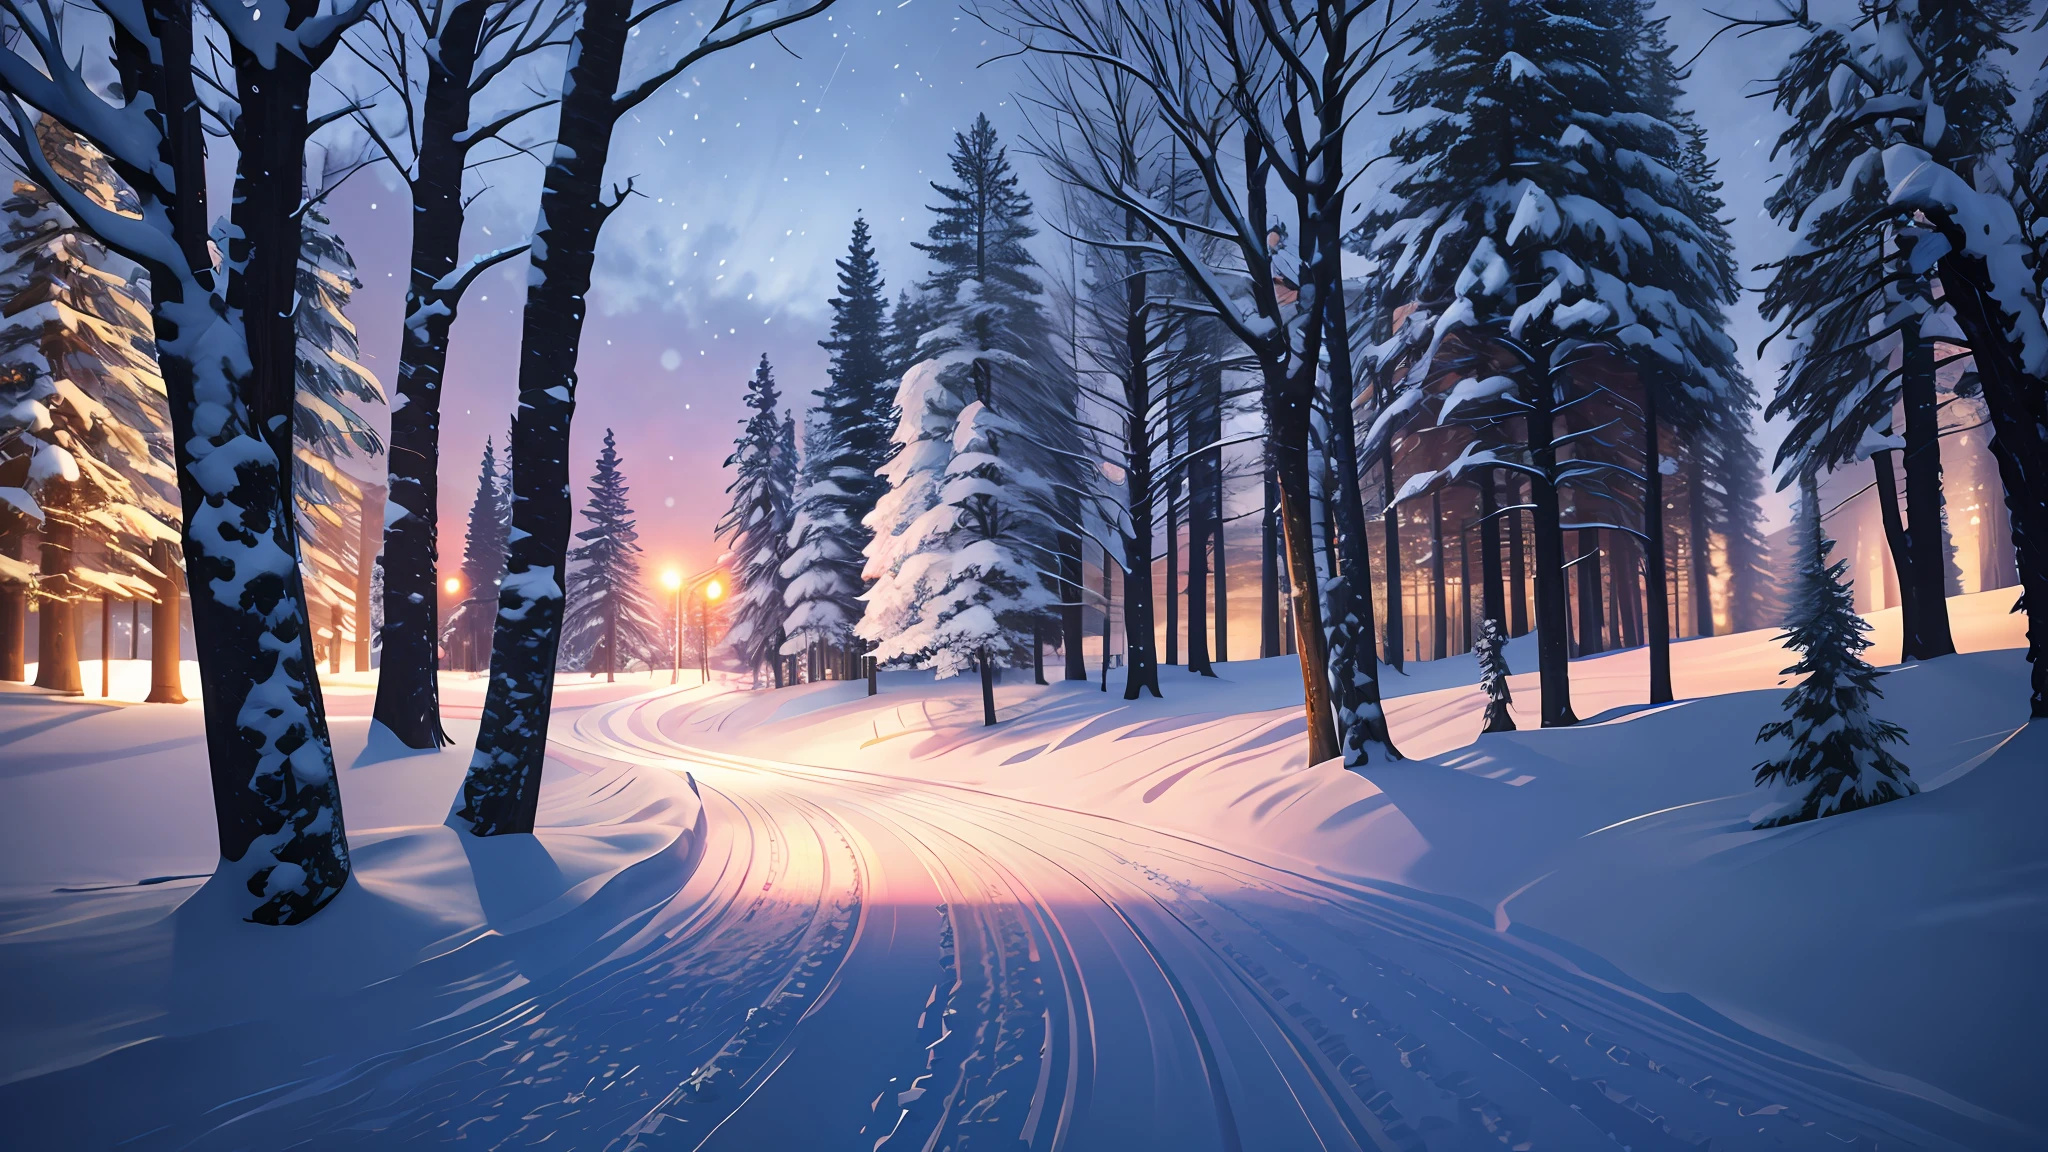 Realistisch, Foto, Schnee, Nacht, Schnee road, hohe Auflösung, real, Baum, blühen, Filmische Beleuchtung, Himmel